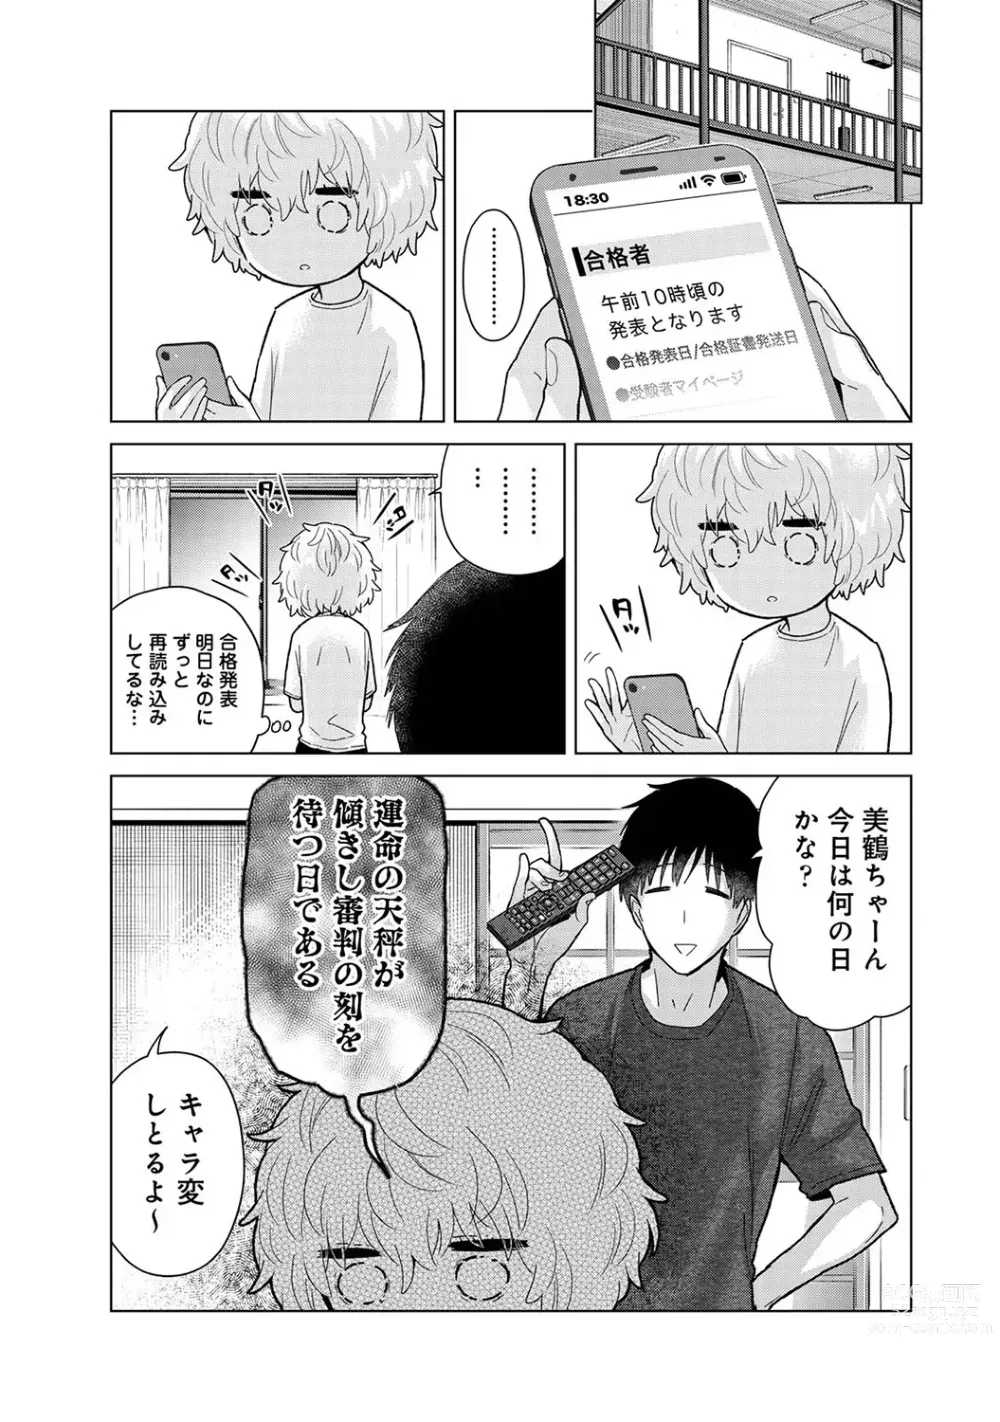 Page 9 of manga COMIC Ananga Ranga Vol. 100